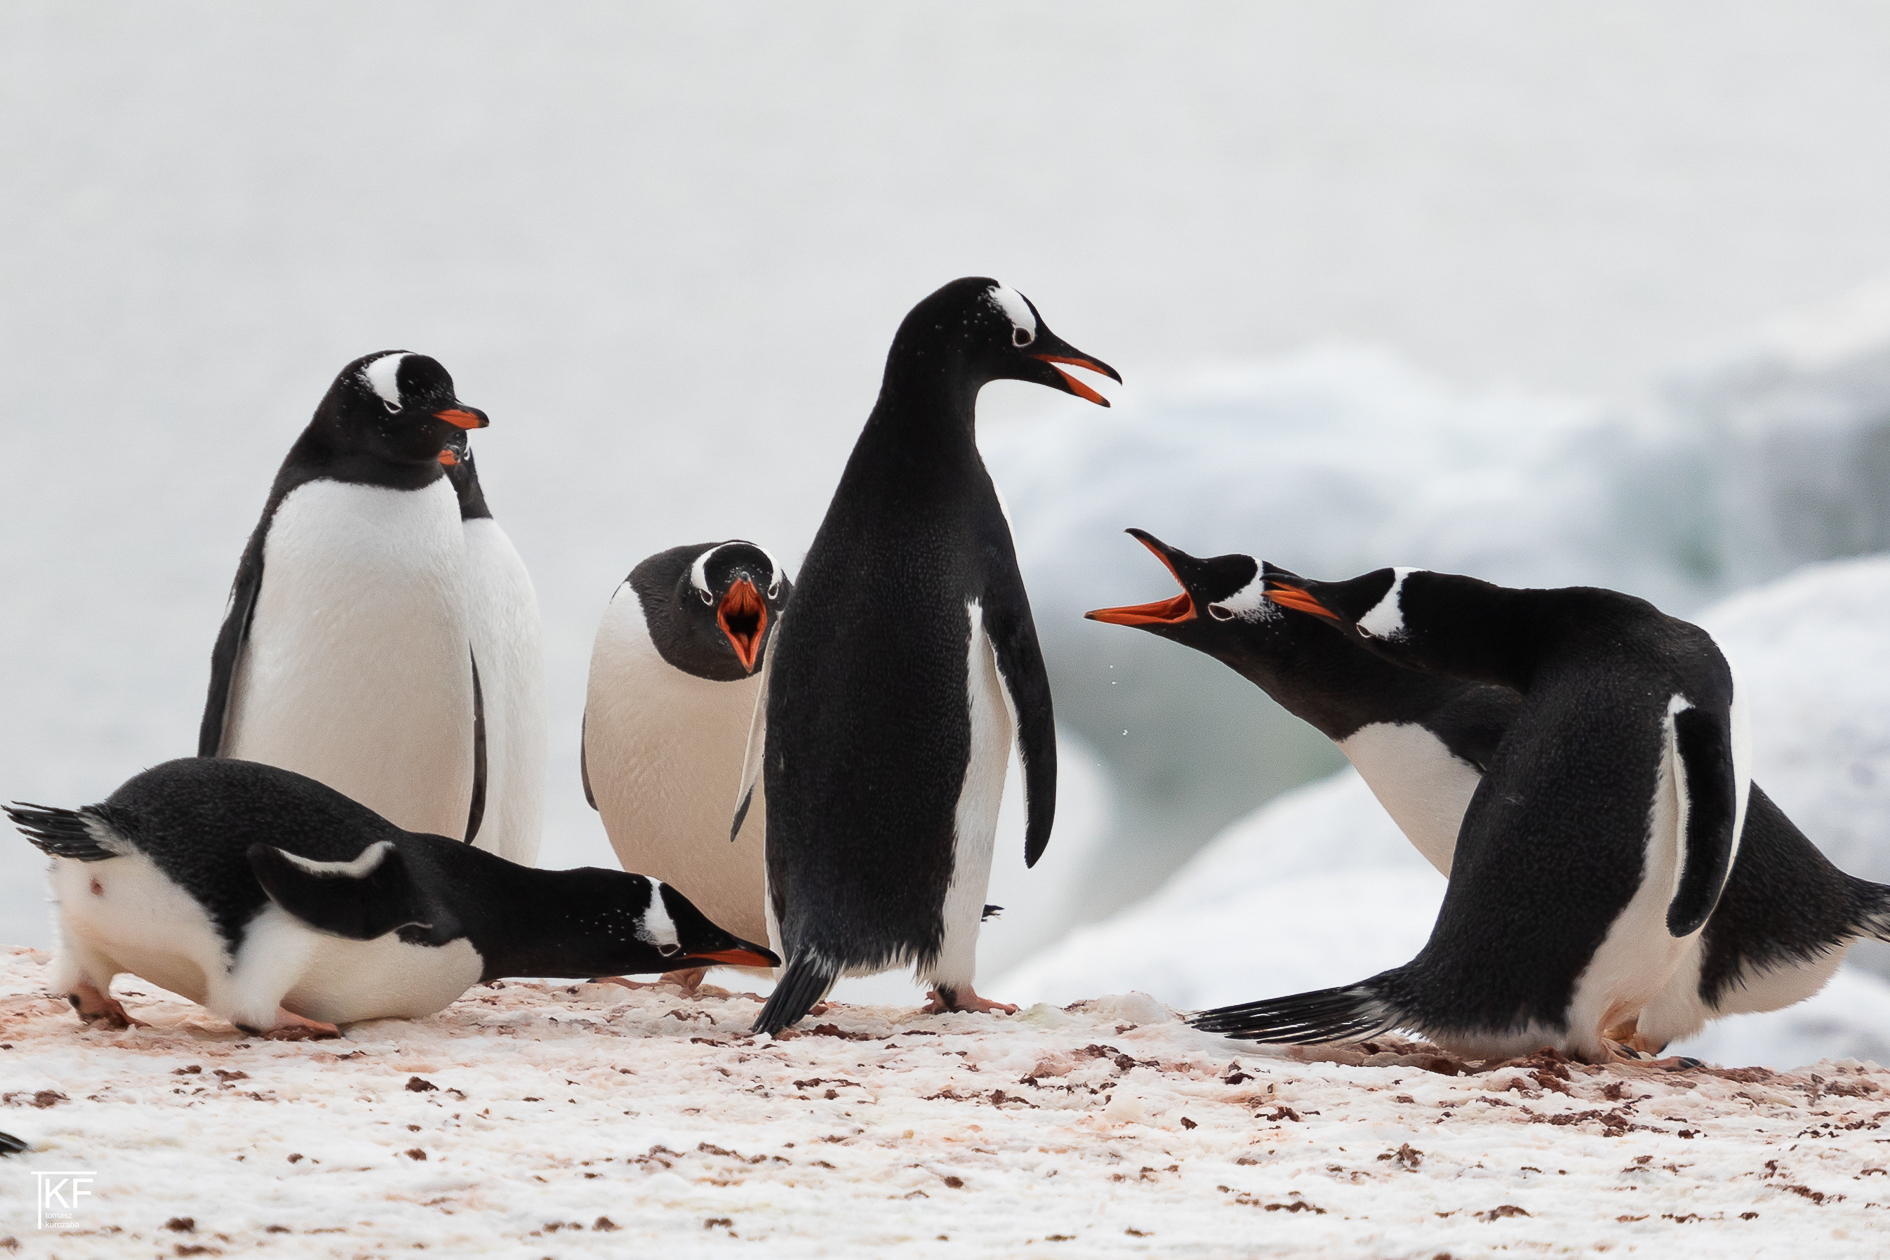 Na zdjęciu 6 pingwinów. 3 z nich mają otwarte dzioby. Autor Tomasz Kurczaba.